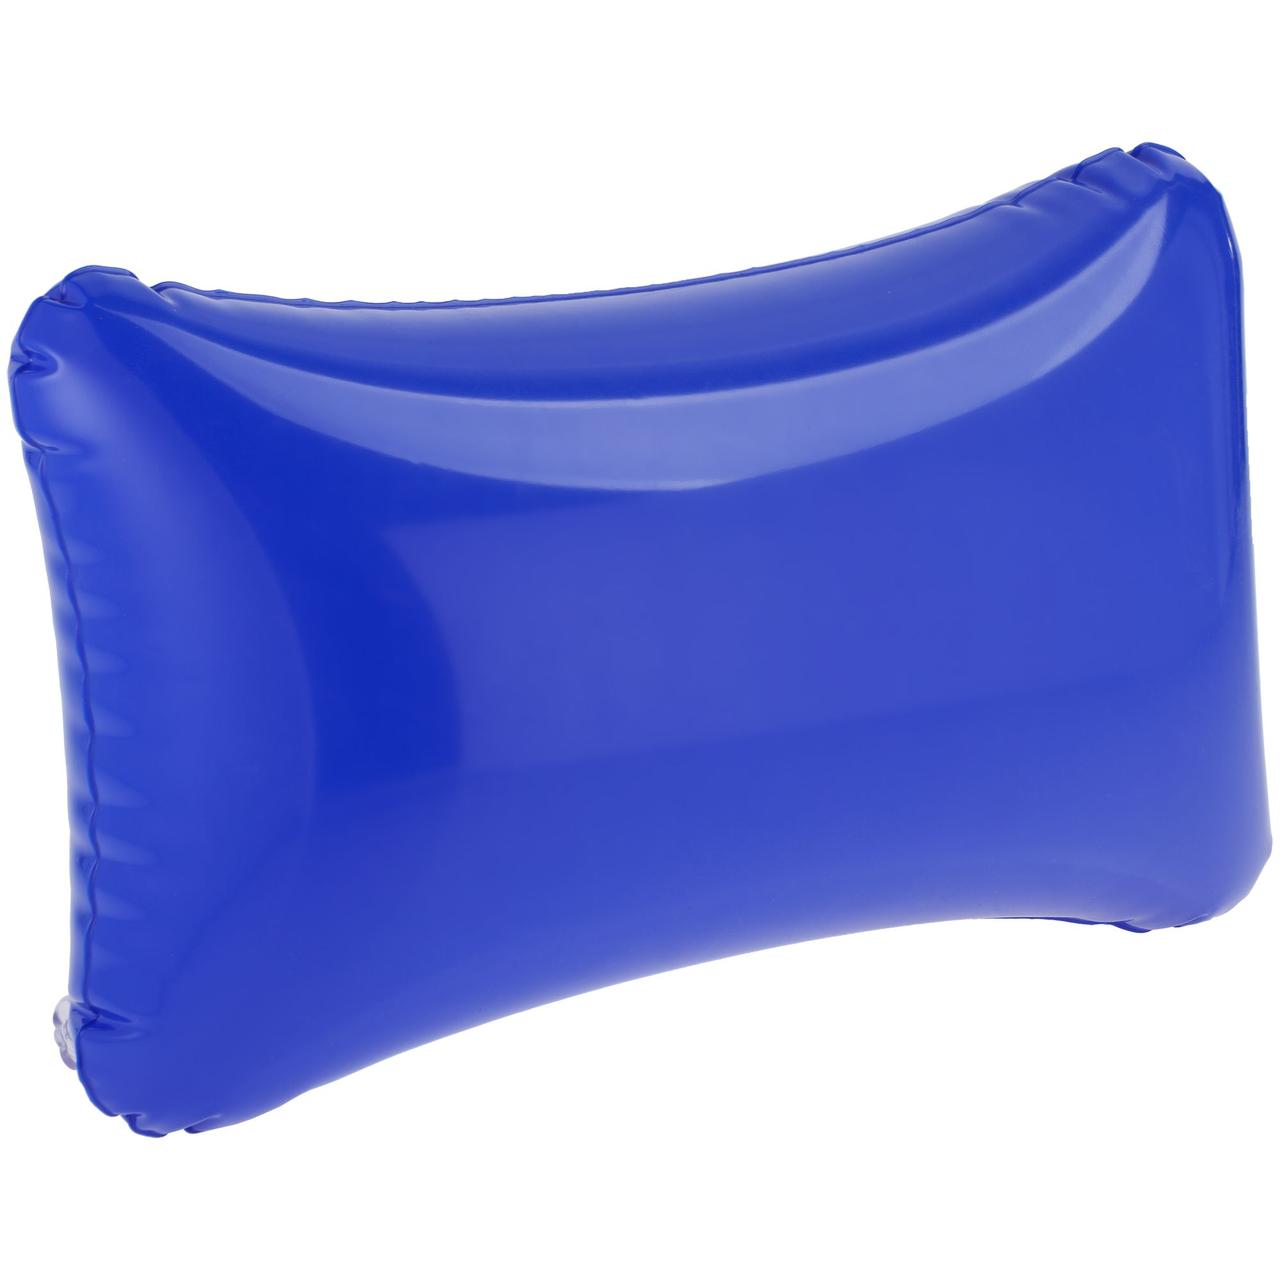 Надувная подушка Ease, синяя (артикул 7668.40)